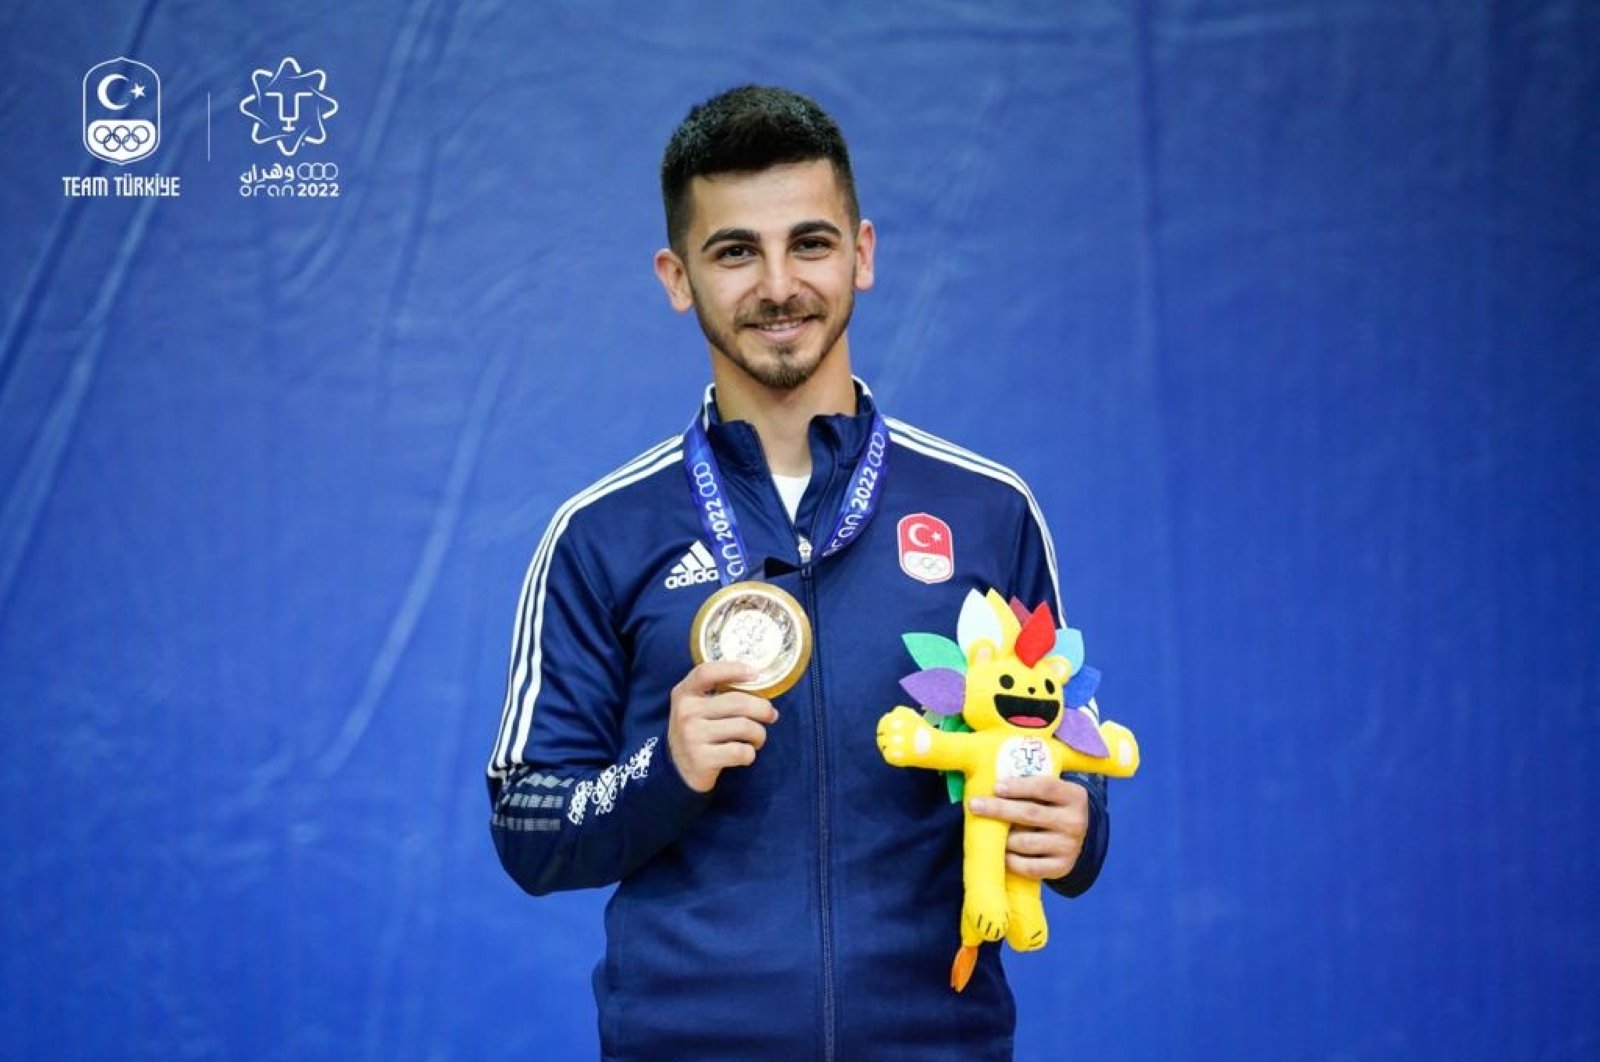 Peraih medali Olimpiade Turki amdan memenangkan emas di Mediterranean Games